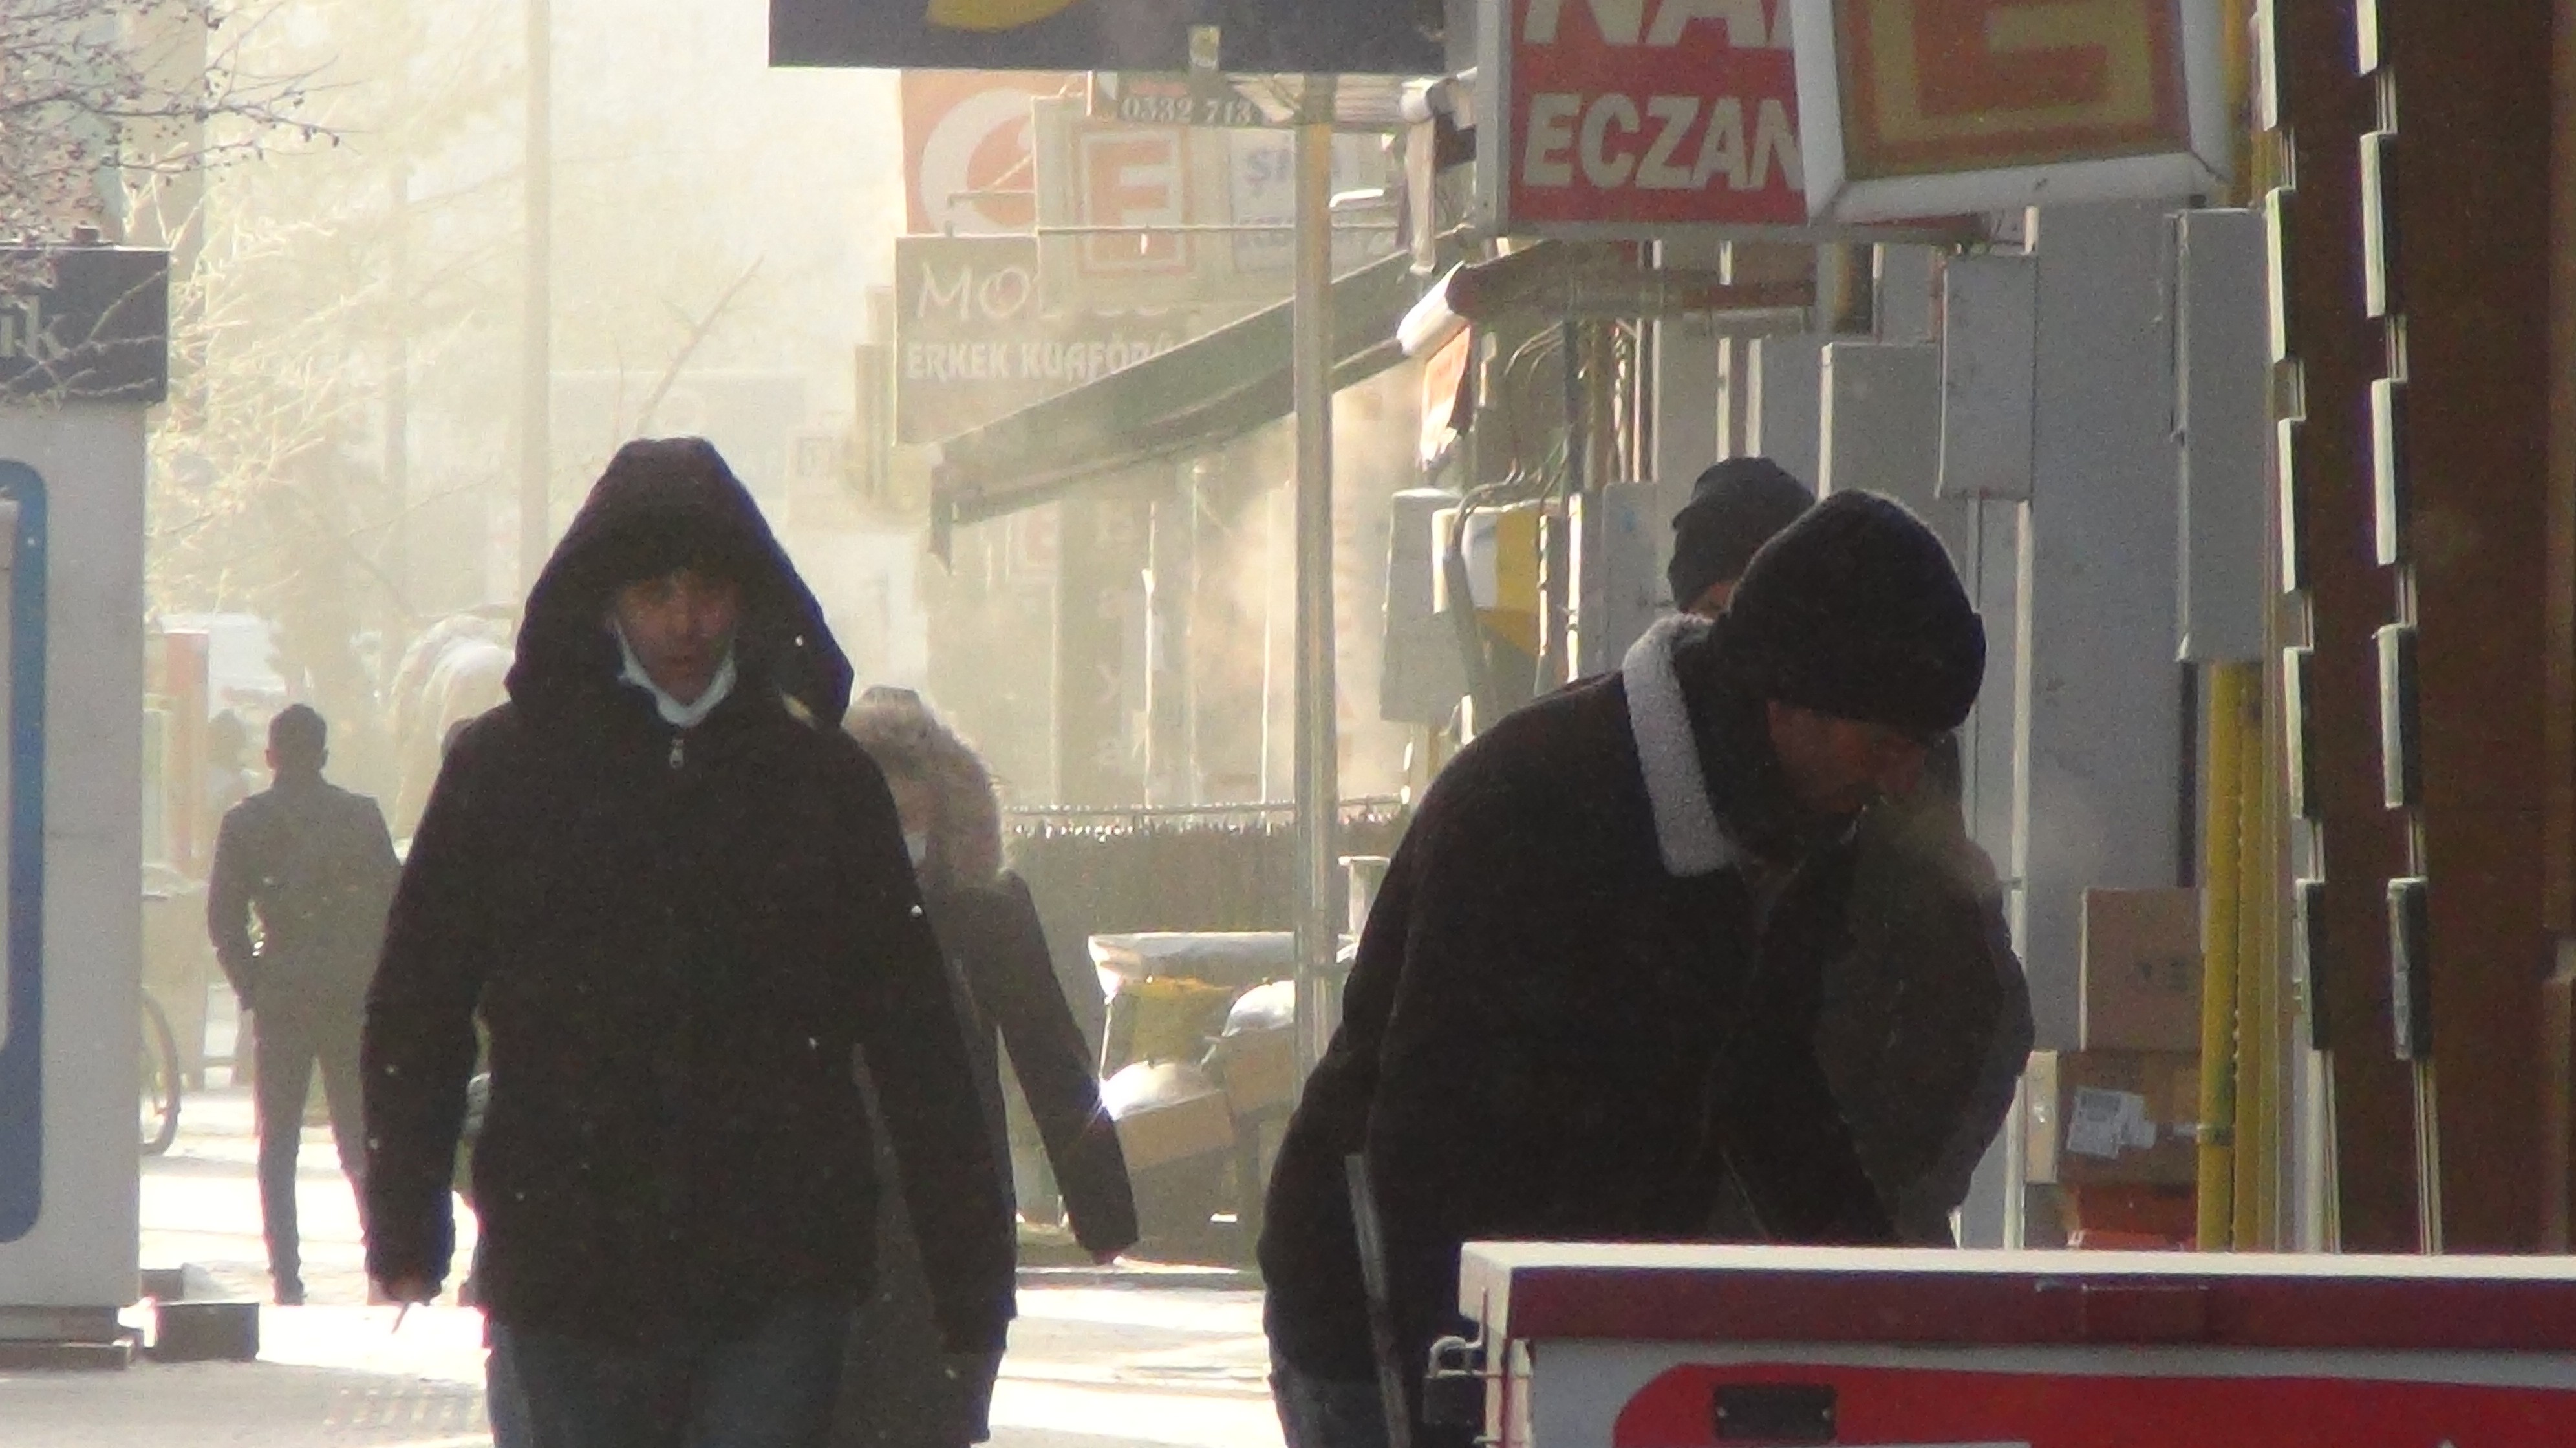 Kars'ta soğuktan vatandaşın kirpikleri buz tuttu